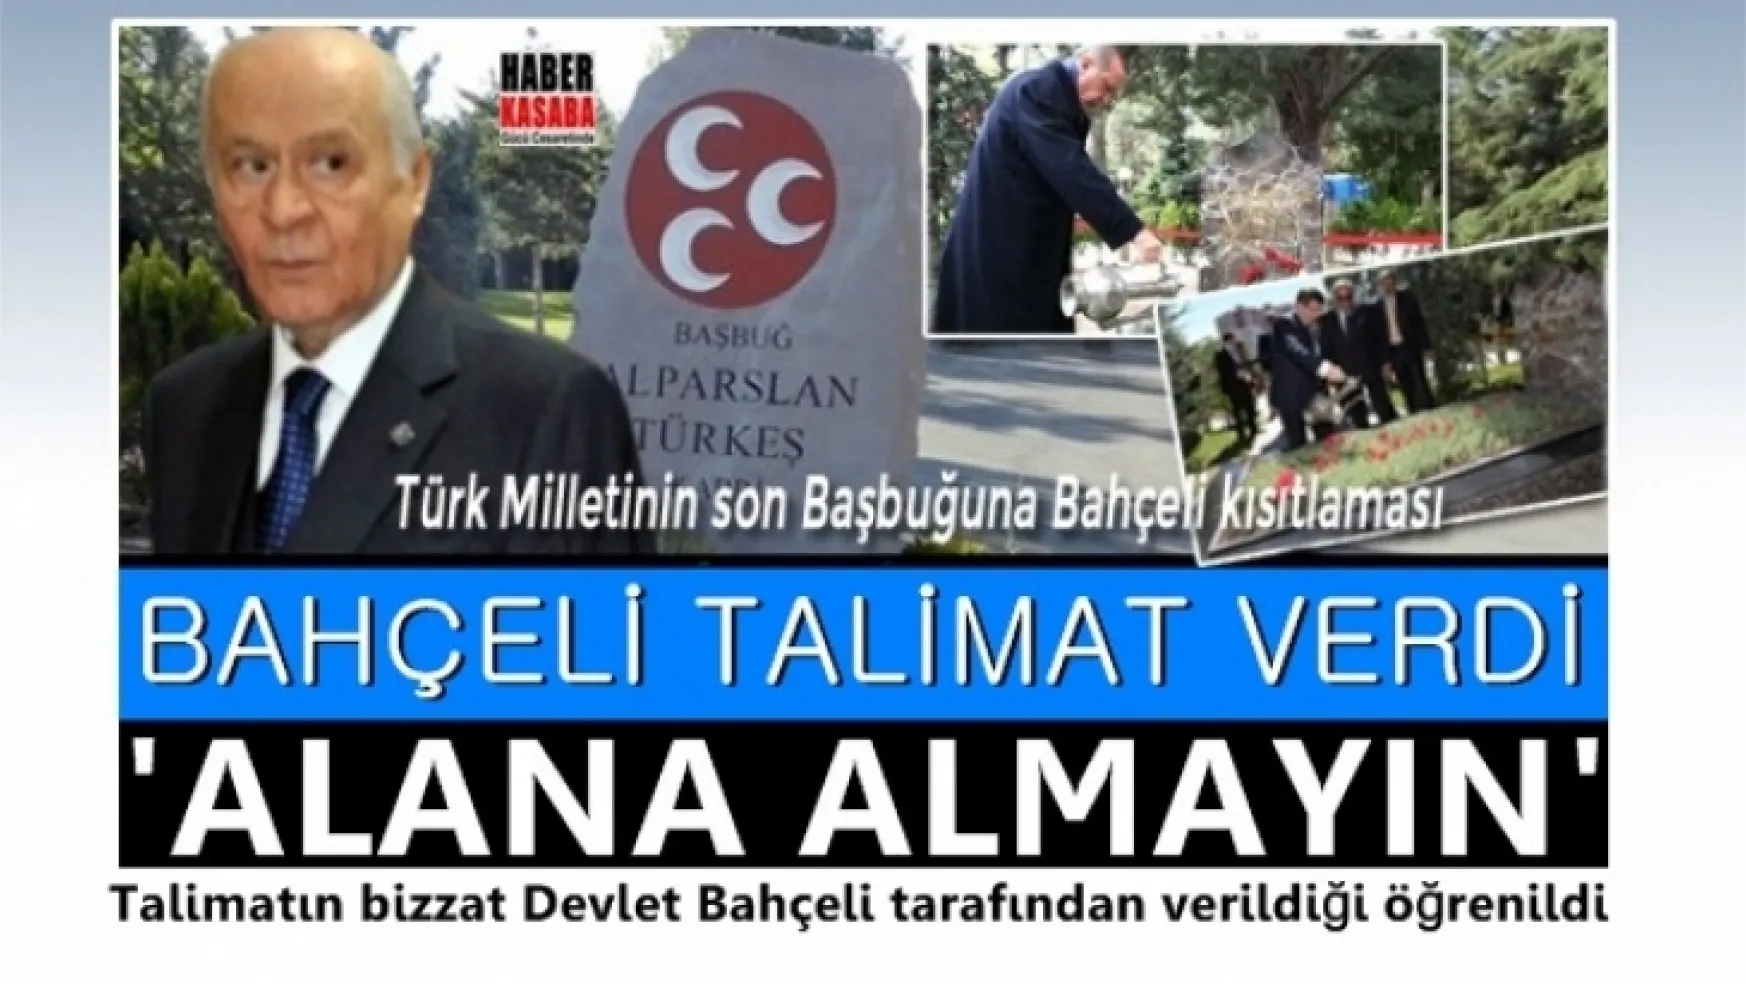 MHP Lideri Bahçeli talimat verdi 'Alana almayın'